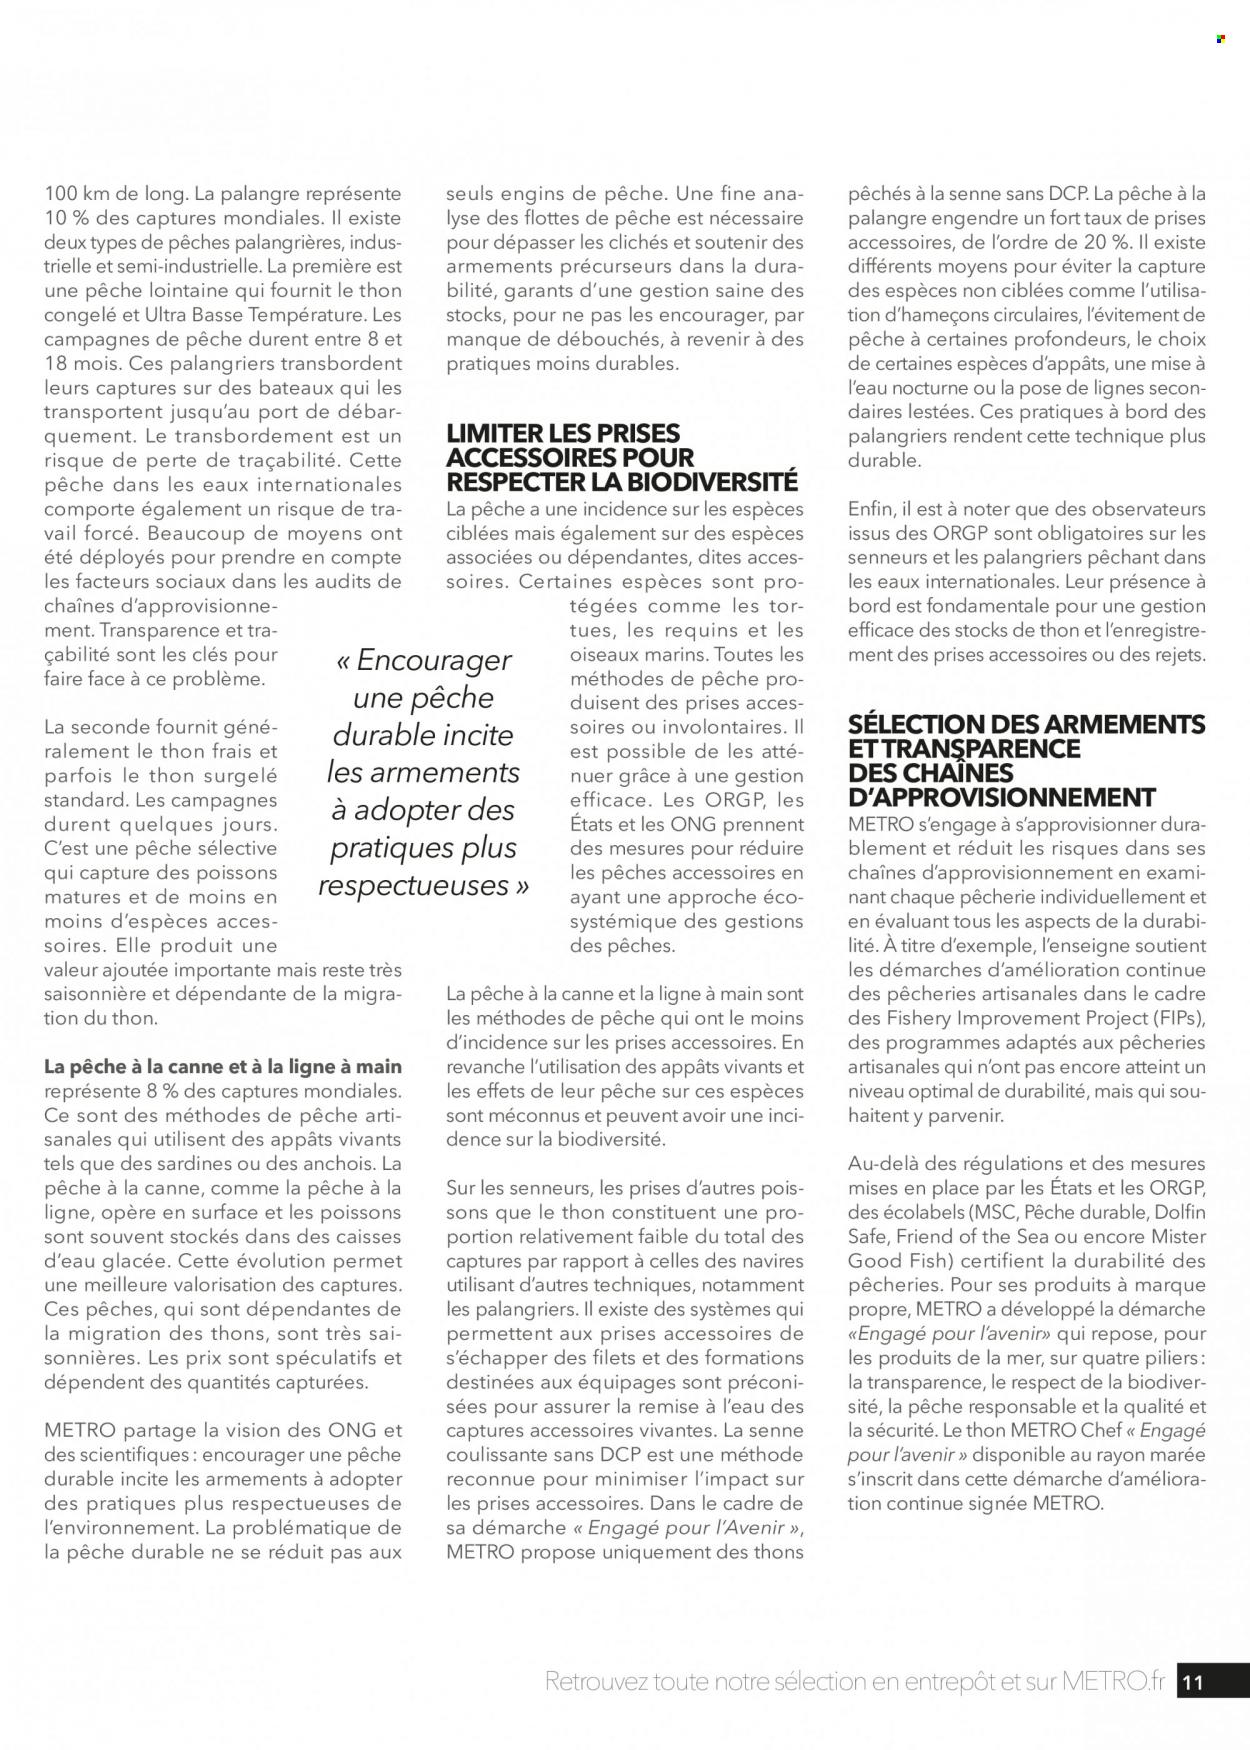 Catalogue Metro. Page 11.